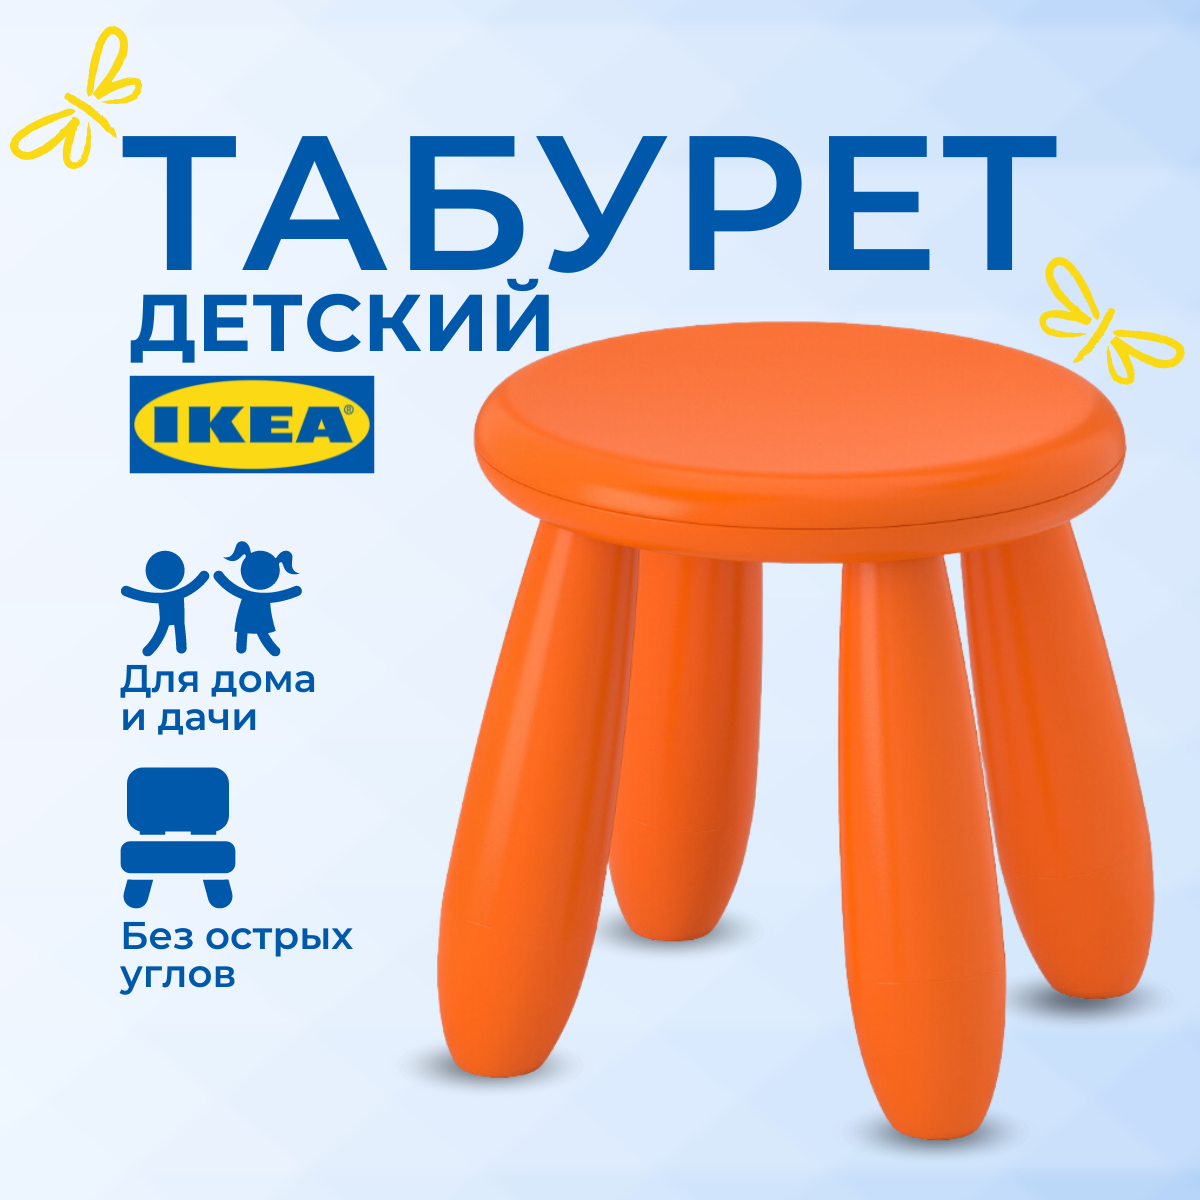 Табурет детский ИКЕА МАММУТ (IKEA MAMMUT), стульчик пластиковый, оранжевый